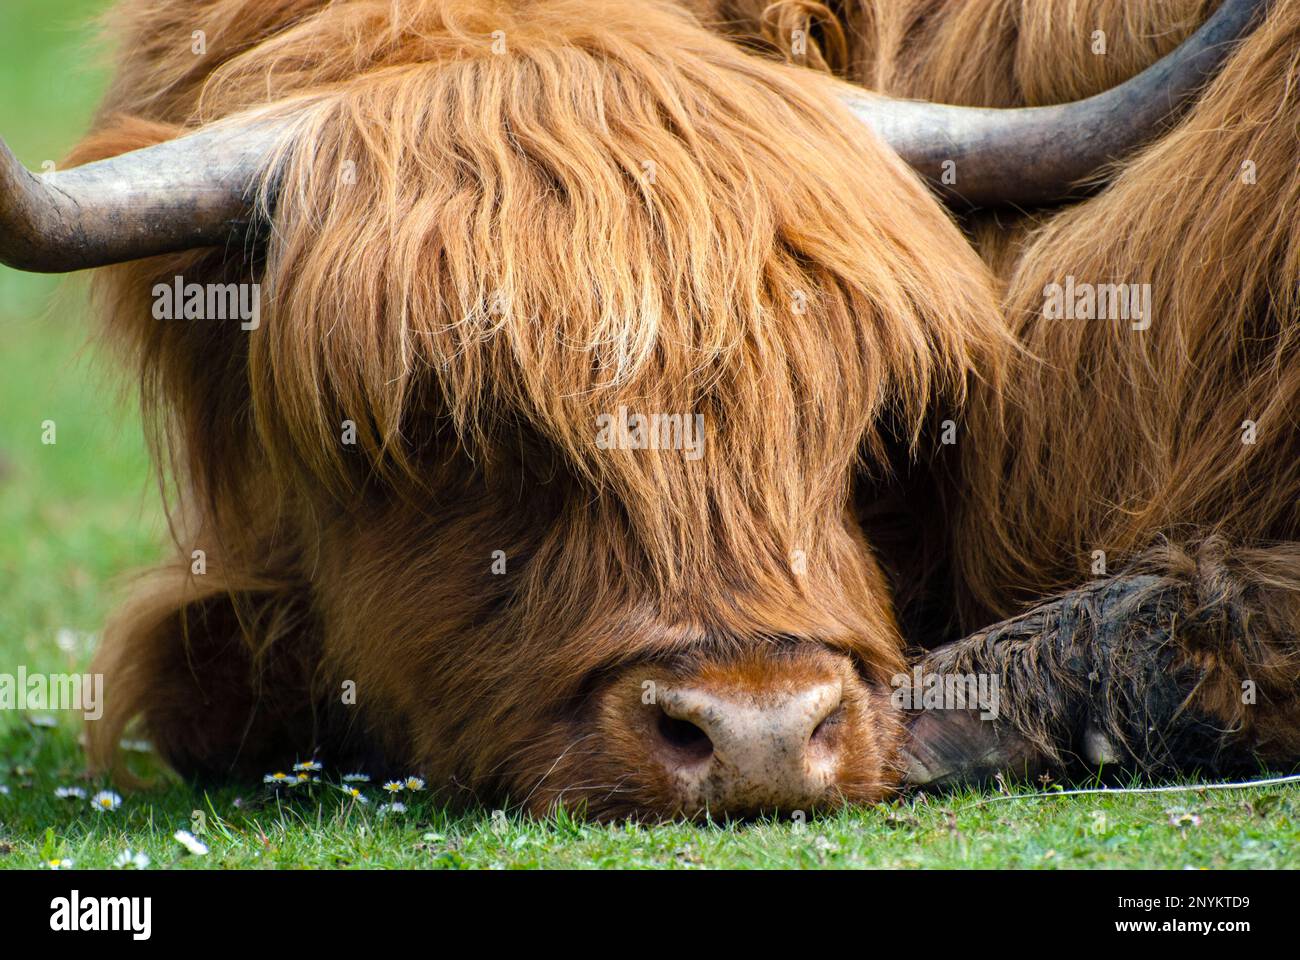 Tiro en la cabeza primer plano de una vaca Highland durmiendo / descansando. Foto de stock